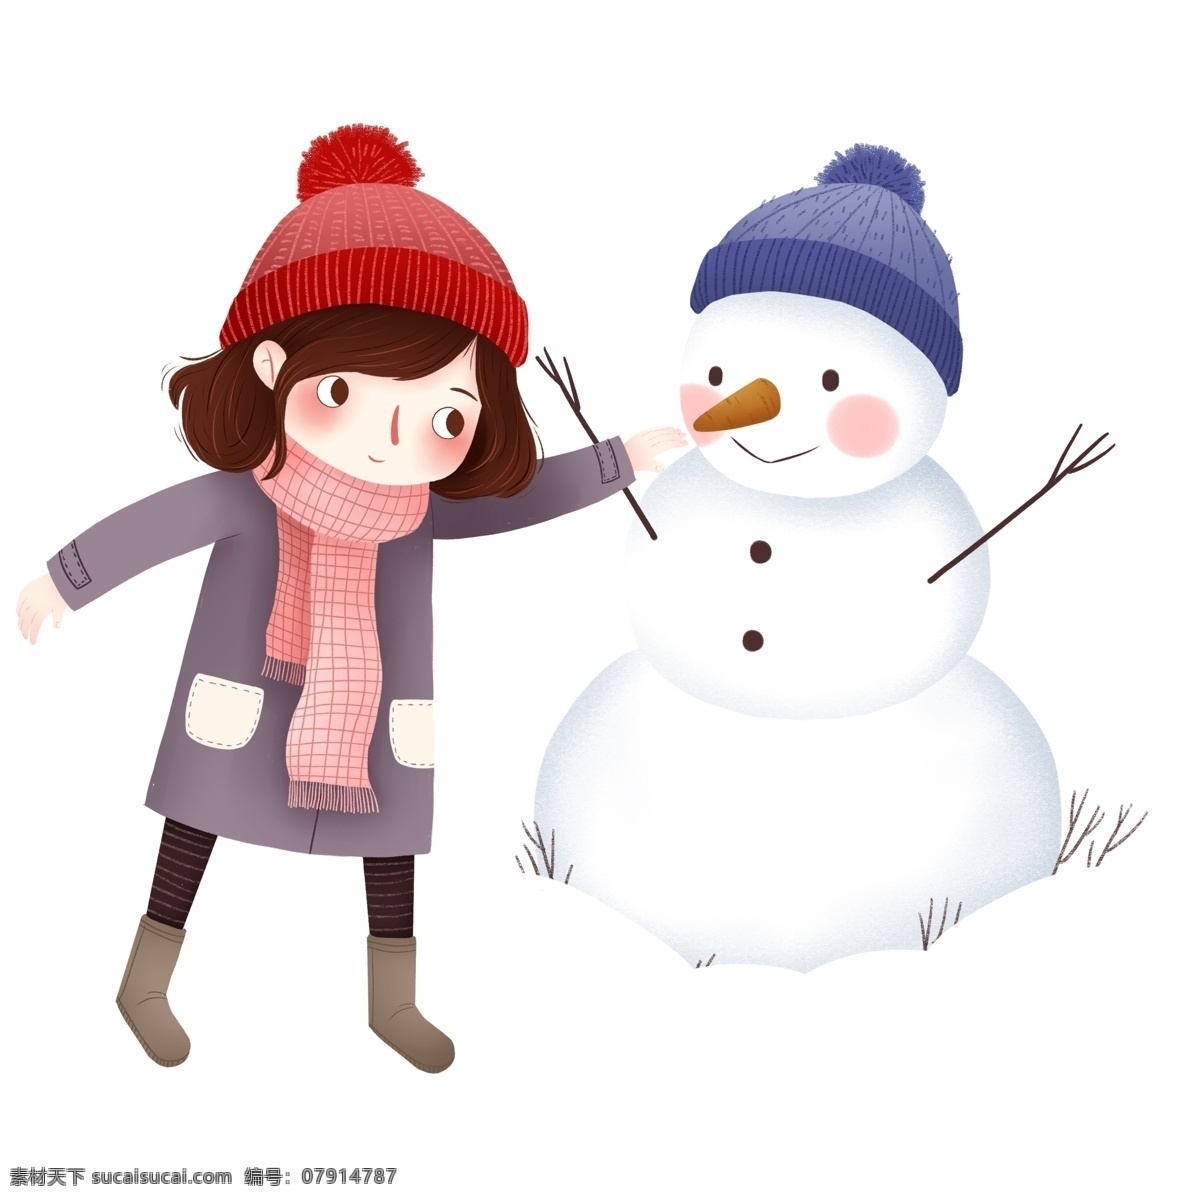 手绘 卡通 堆 雪人 女孩 元素 堆雪人 红帽子 蓝帽子 人物元素 精致人物 手绘元素 装饰图案 设计元素 卡通元素